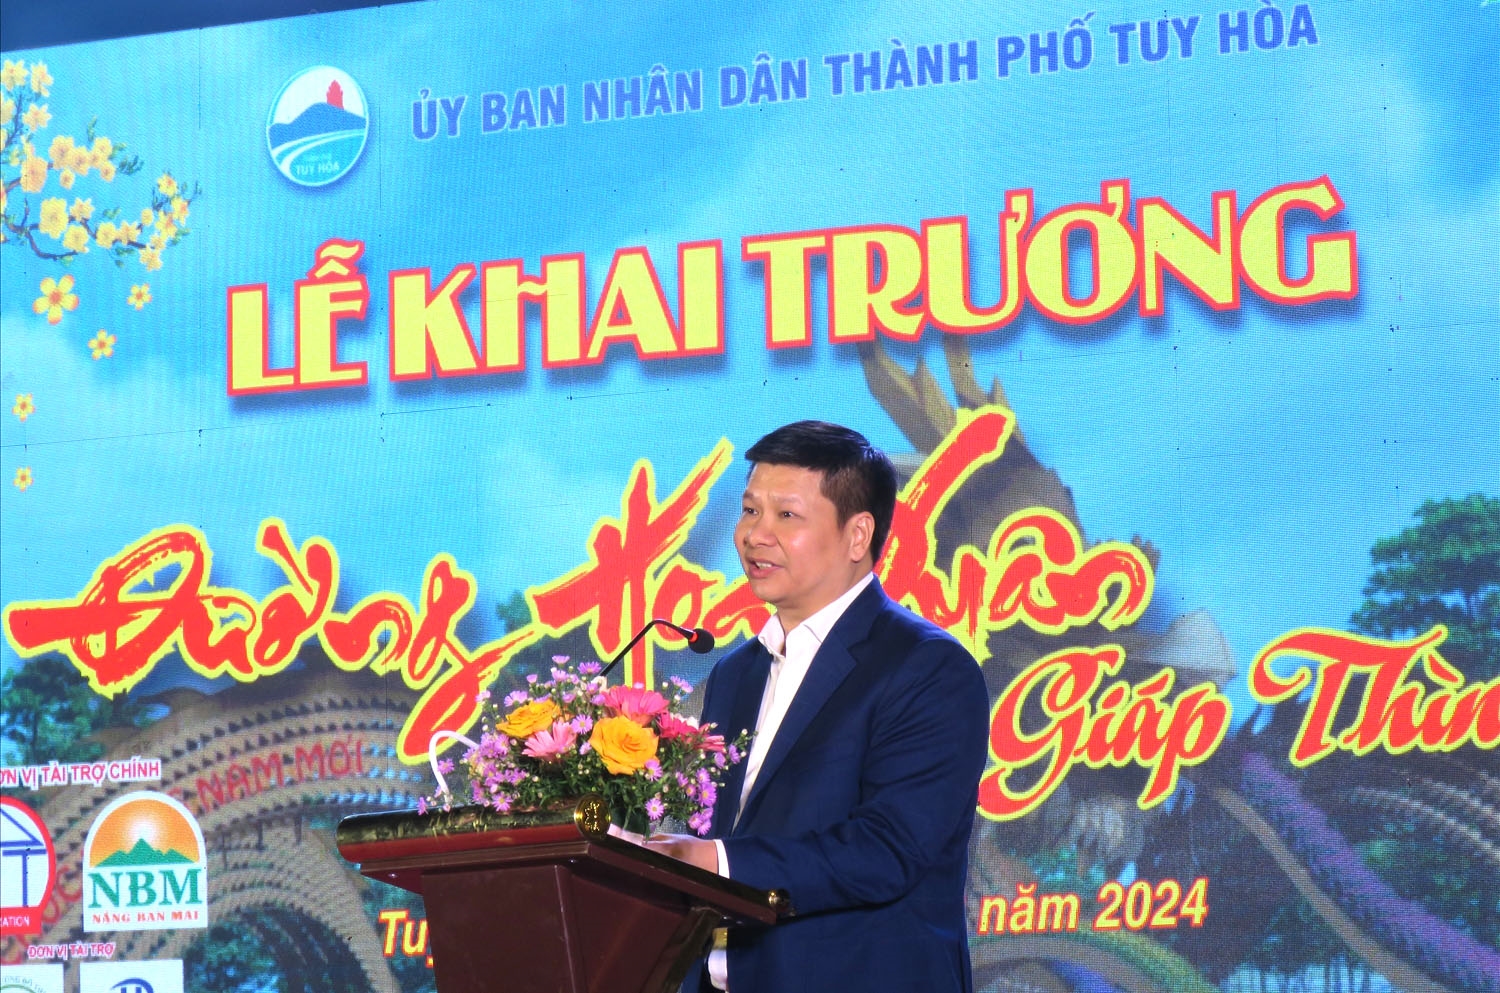 Ông Cao Đình Huy - Chủ tịch UBND Tp. Tuy Hòa phát biểu tại buổi Lễ khai trương đường hoa